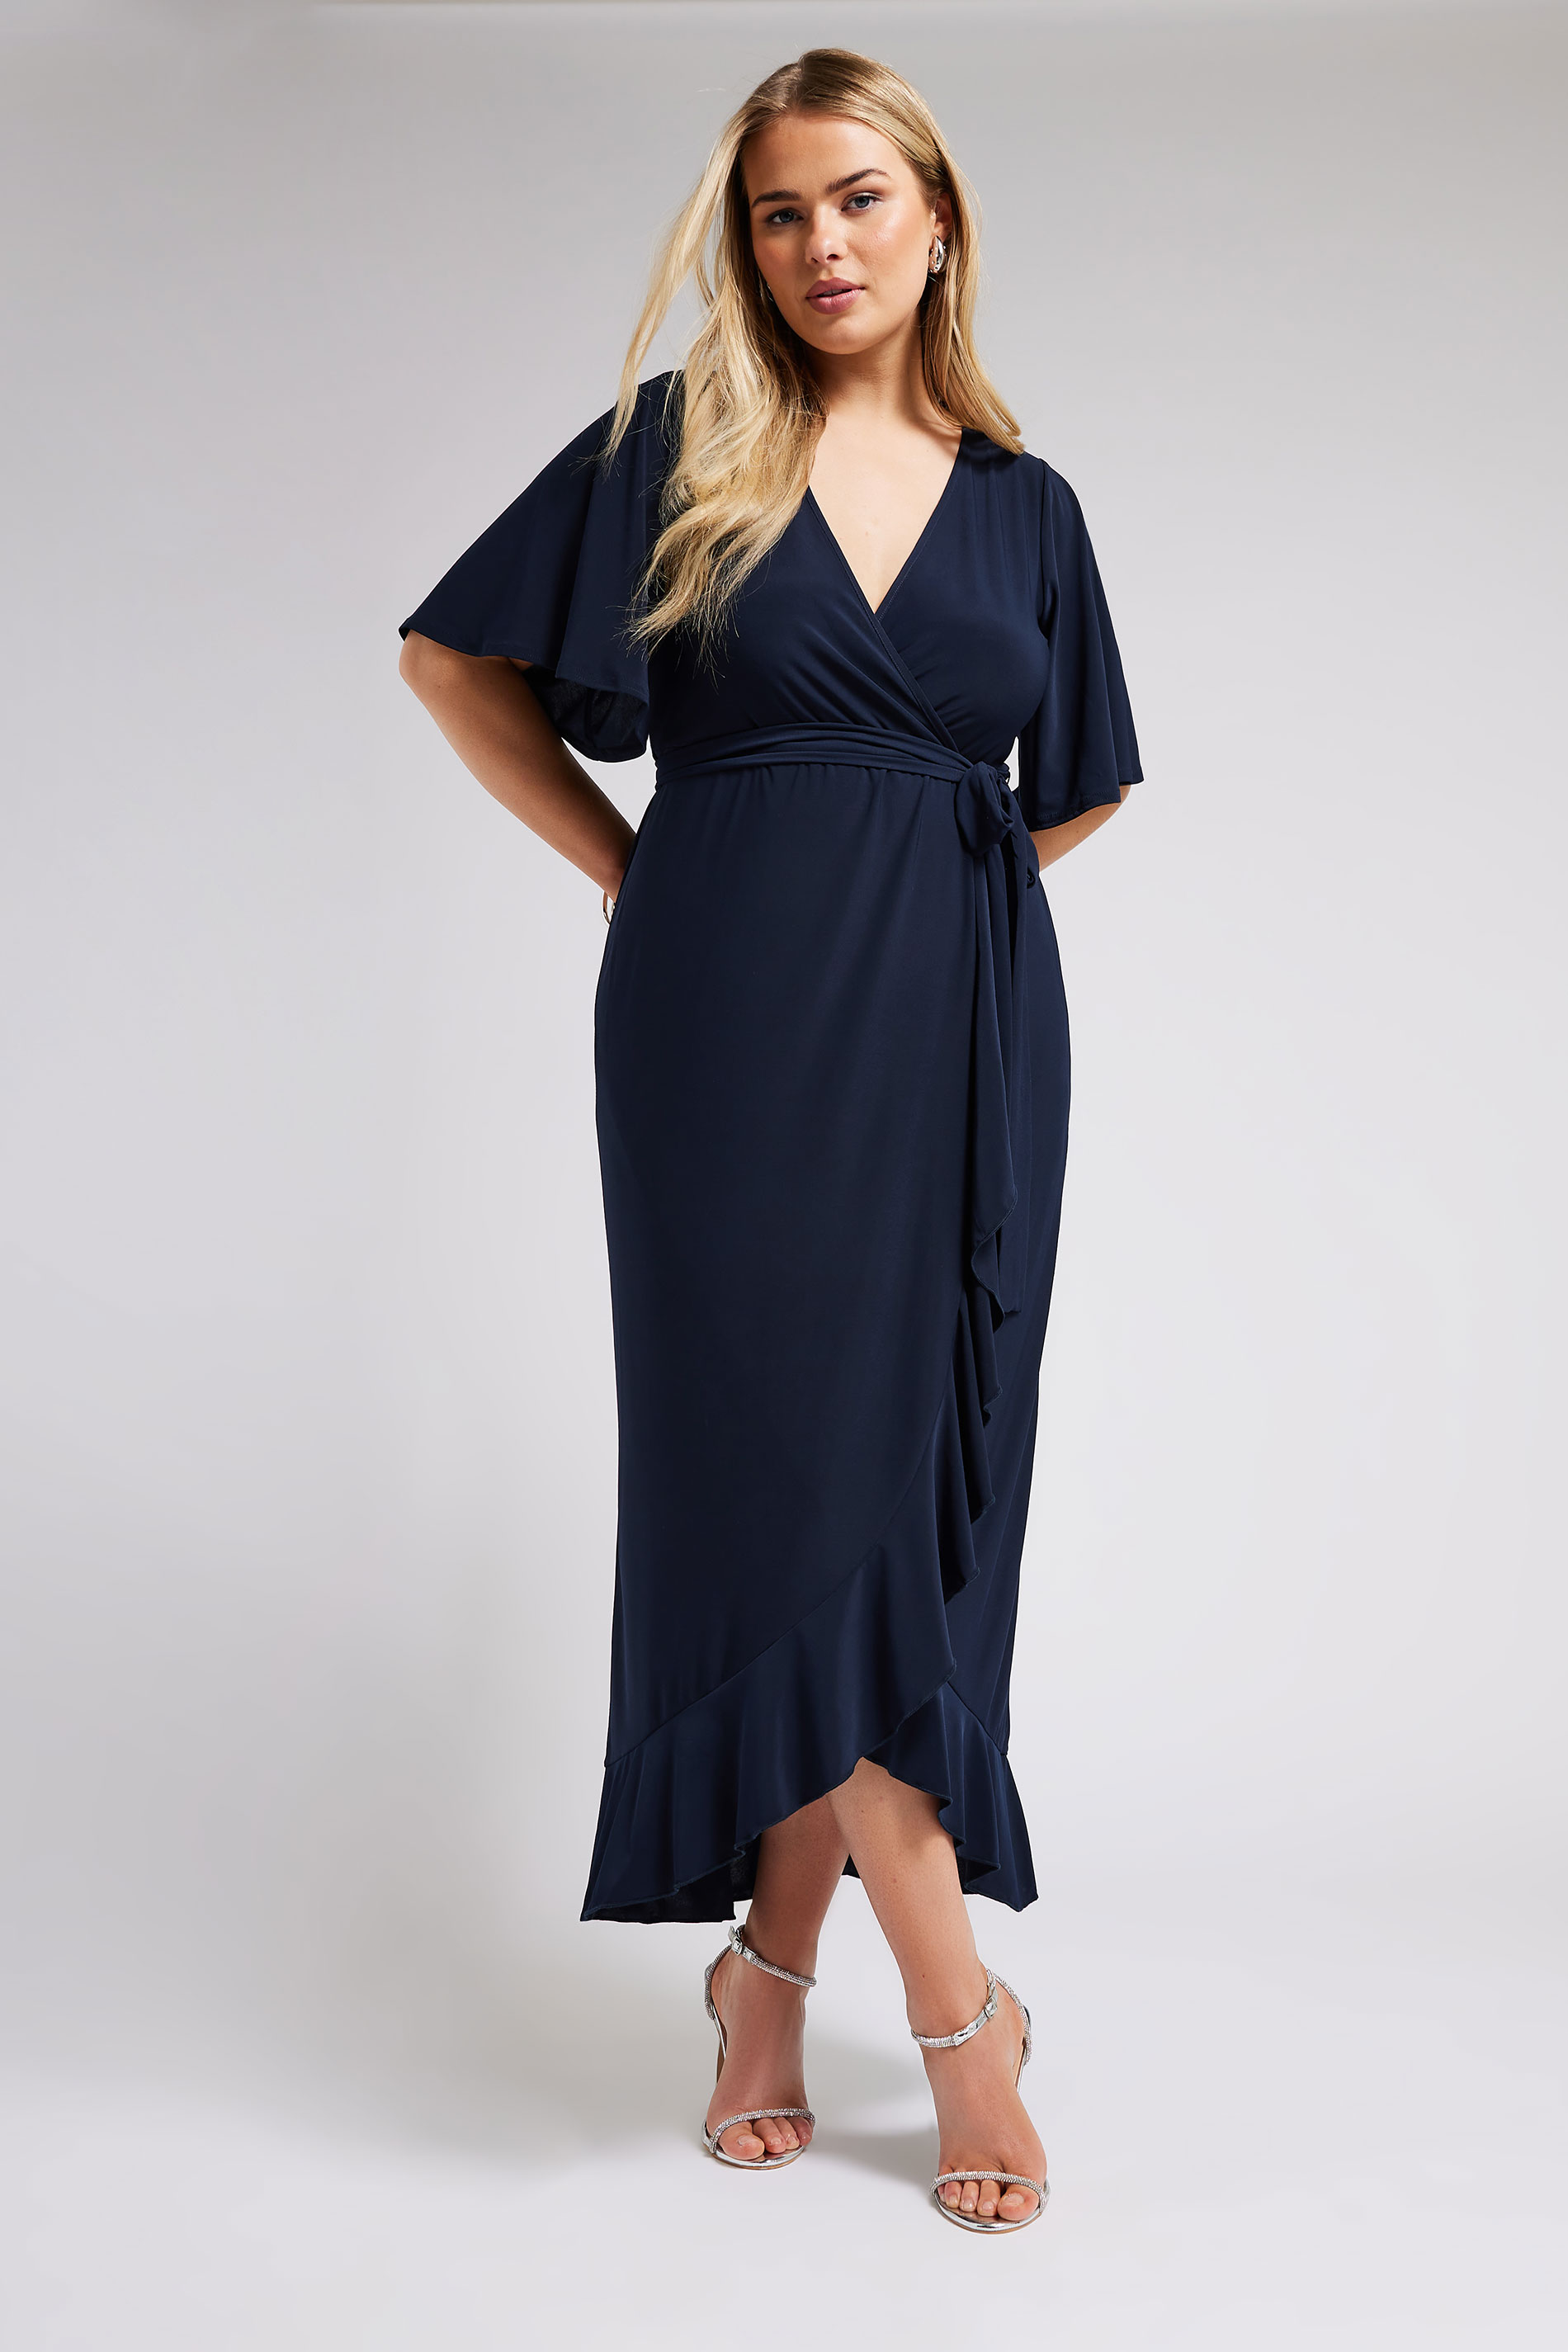 YOURS Plus Size Black Ruffle Hem Wrap Dress | Yours Clothing 2